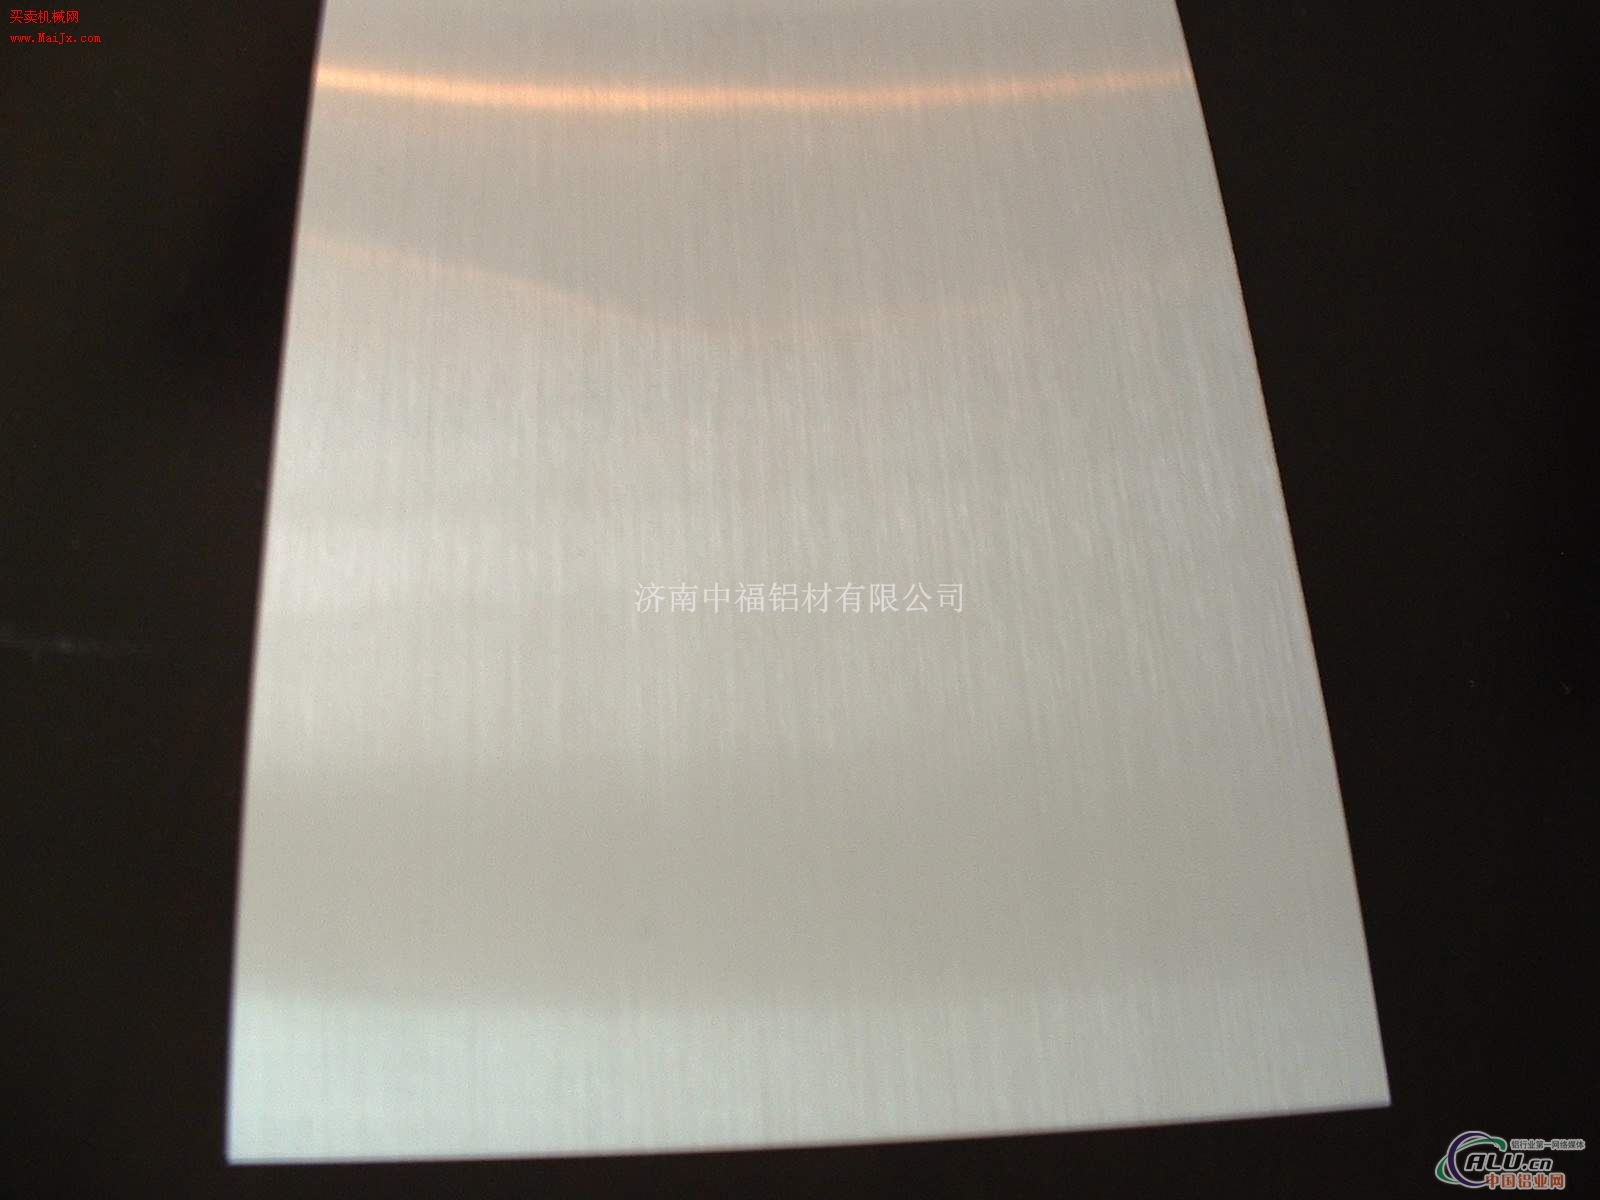 铝板的加工过程冷轧铝板的价格